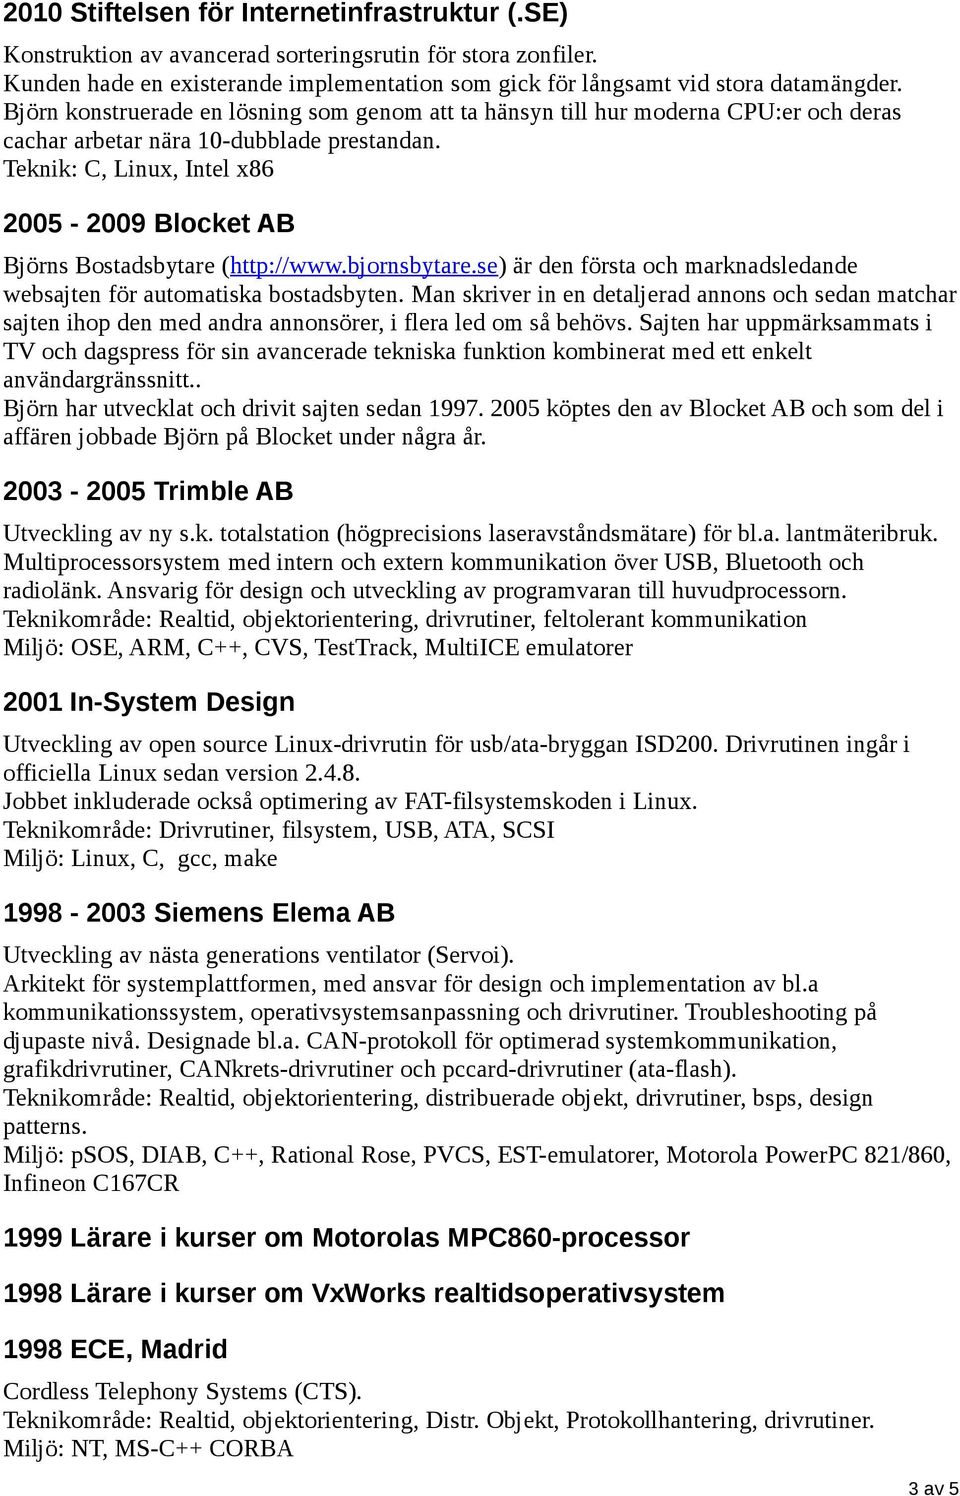 Teknik: C, Linux, Intel x86 2005-2009 Blocket AB Björns Bostadsbytare (http://www.bjornsbytare.se) är den första och marknadsledande websajten för automatiska bostadsbyten.